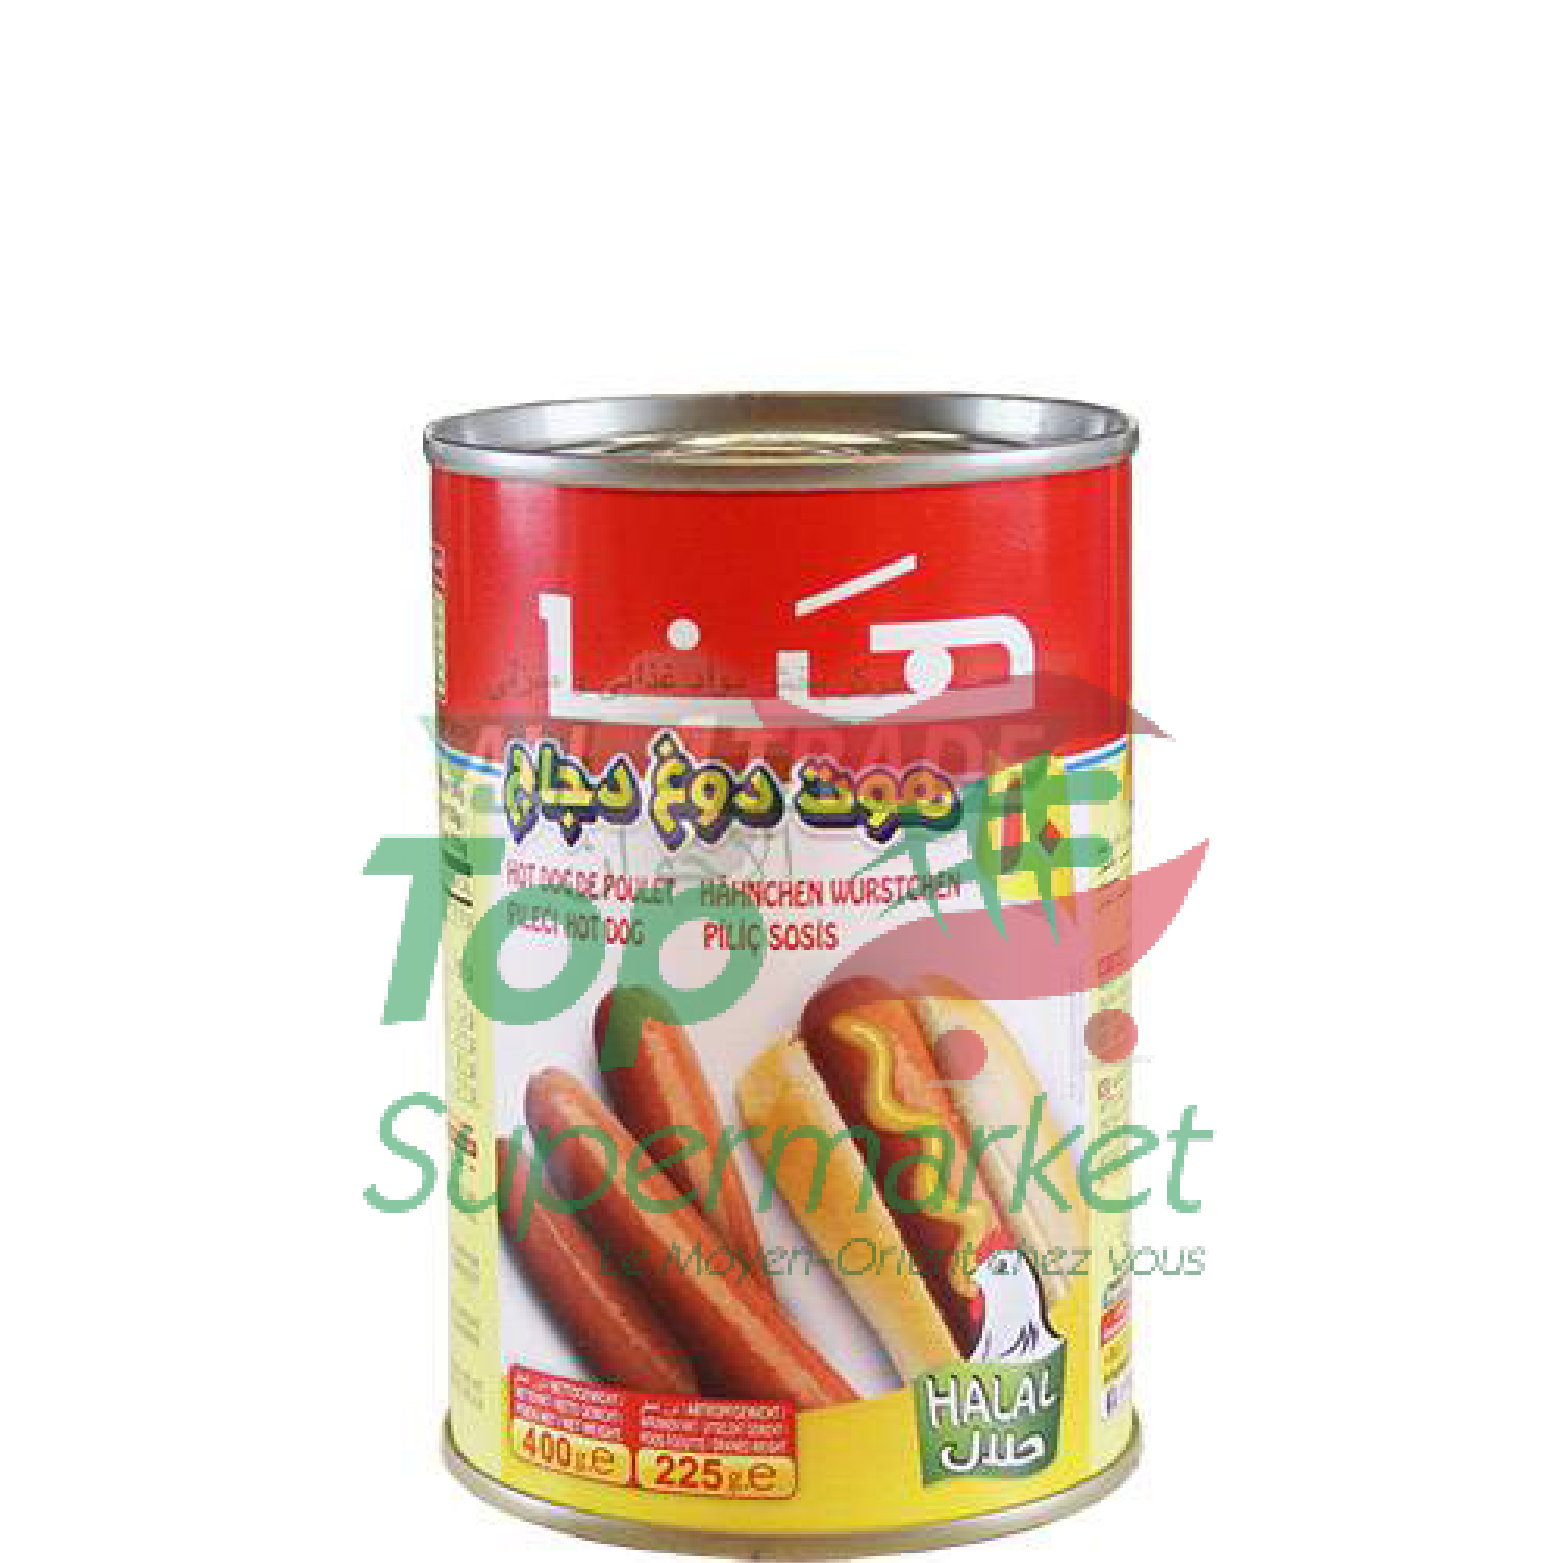 Hana Chicken Hot Dogs400